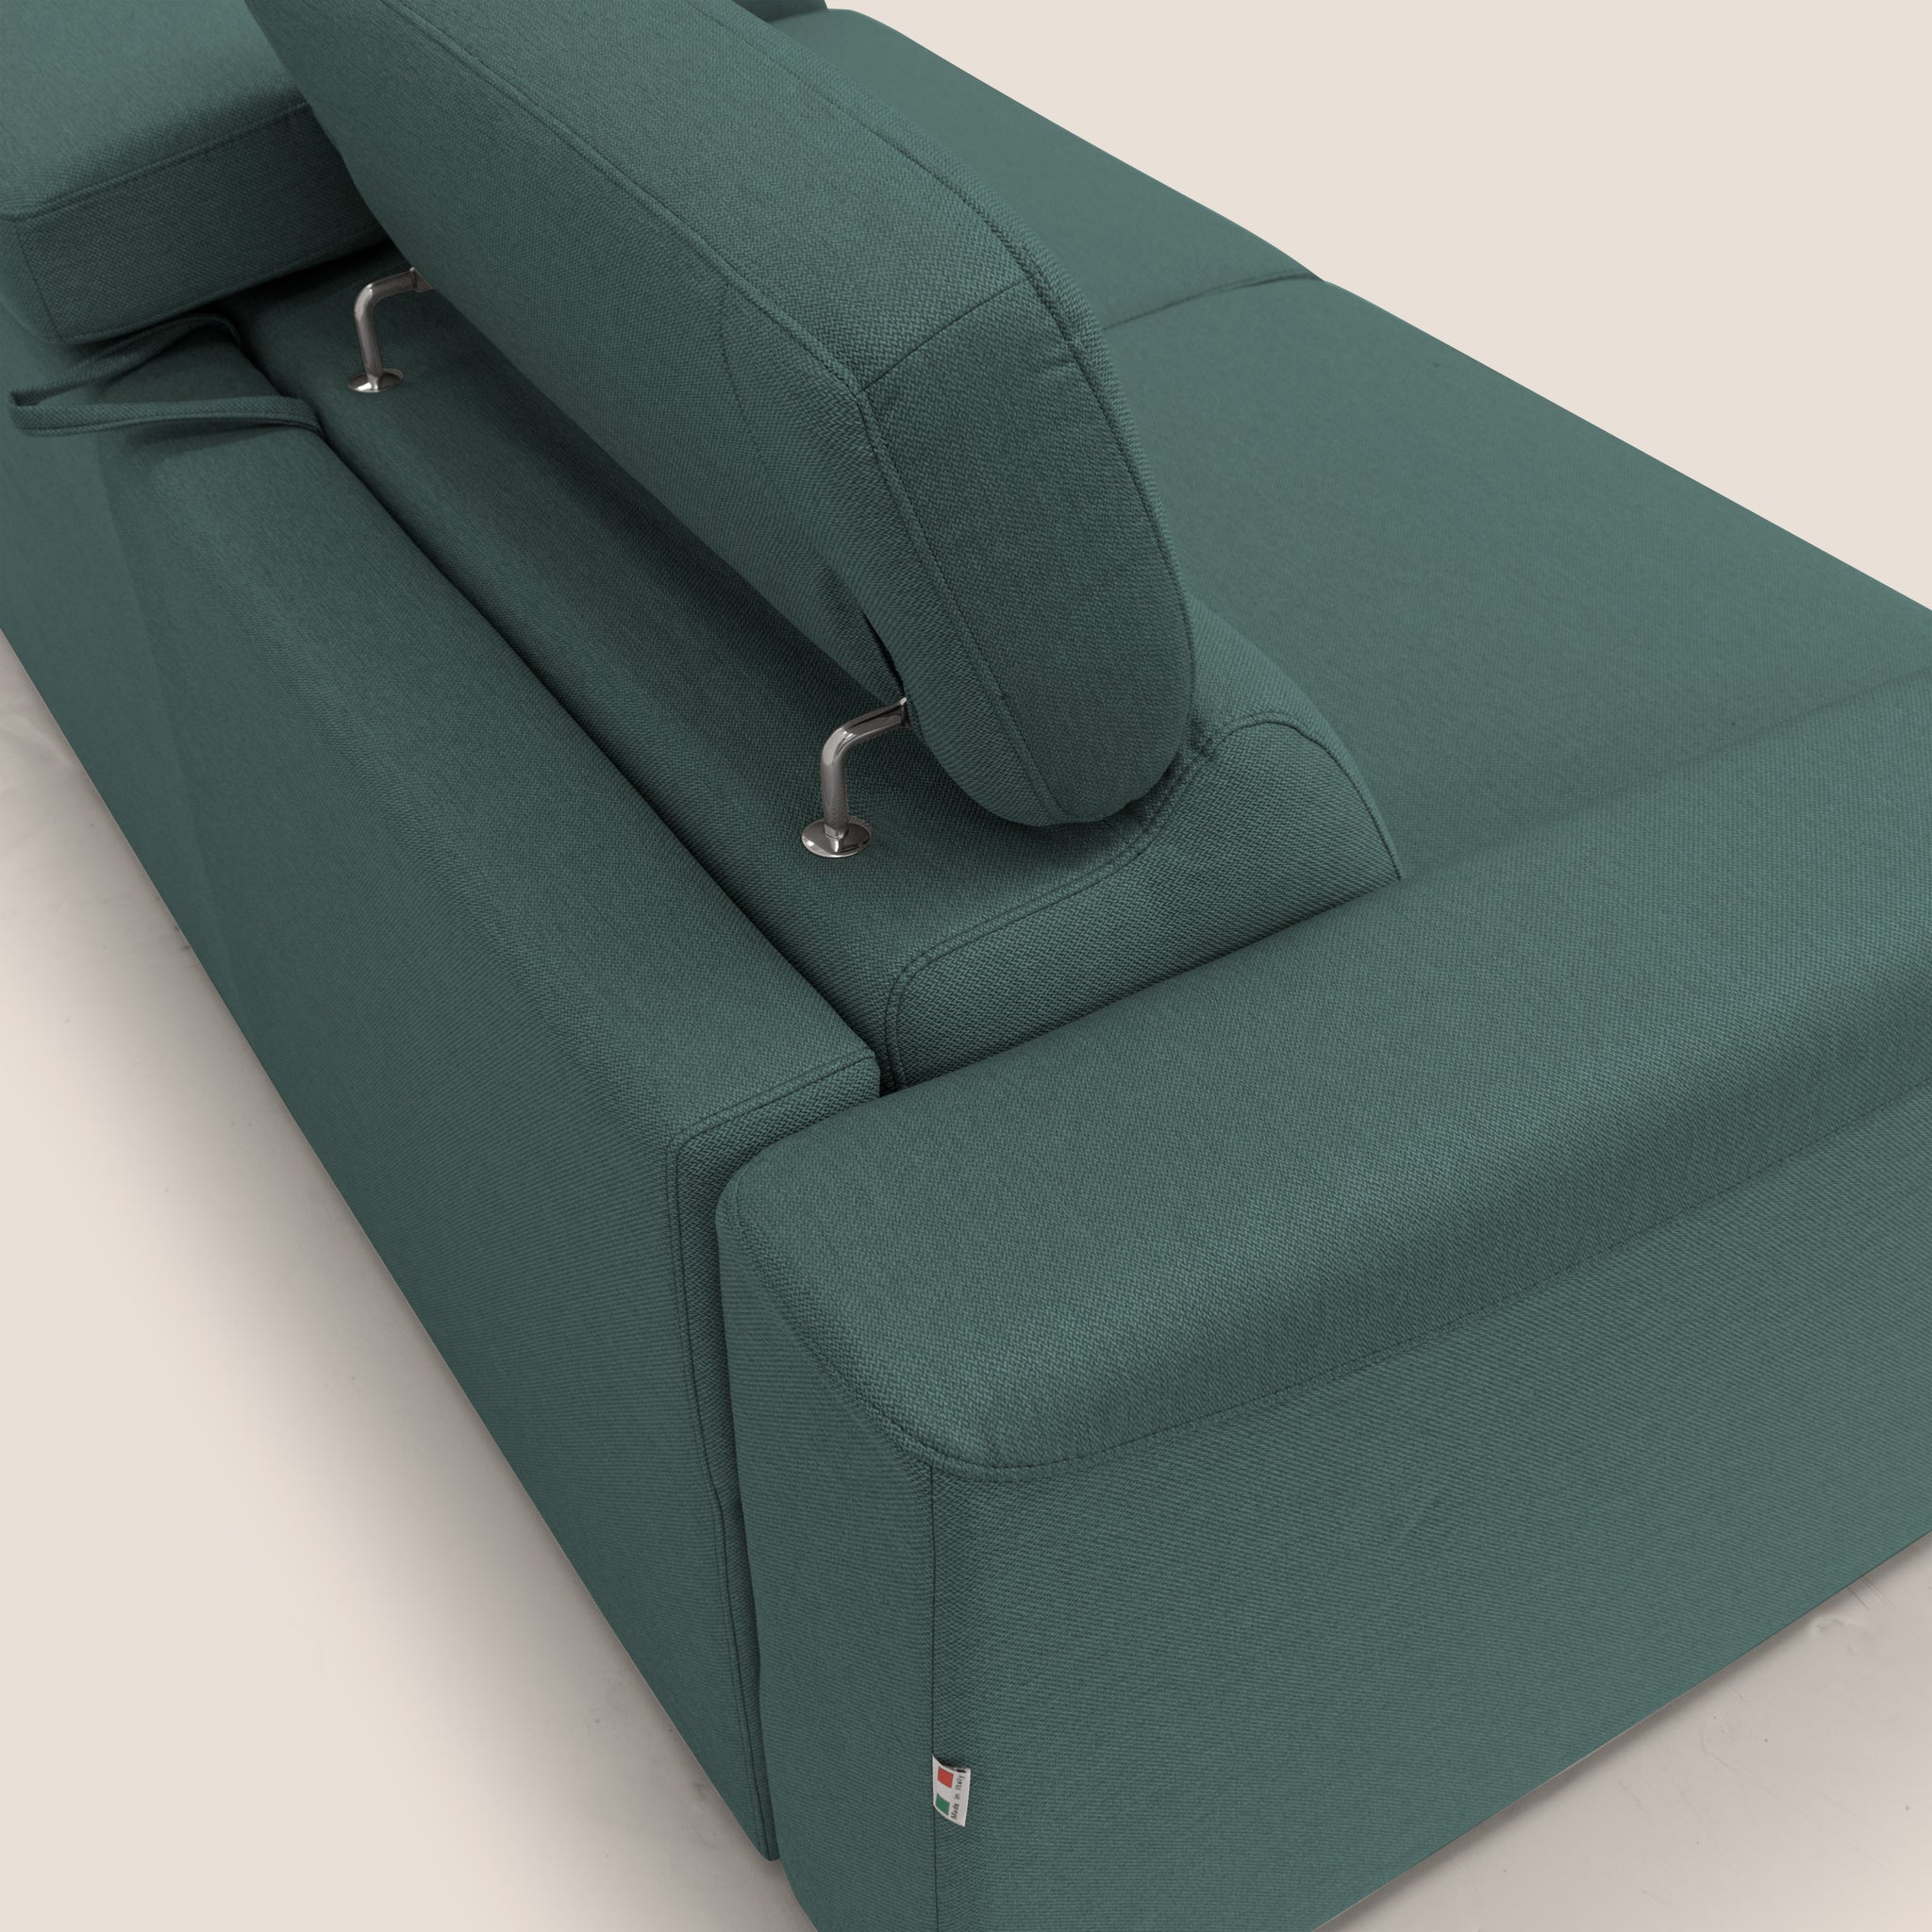 Poseidon divano letto + relax elettrico in tessuto smacchiabile impermeabile T05